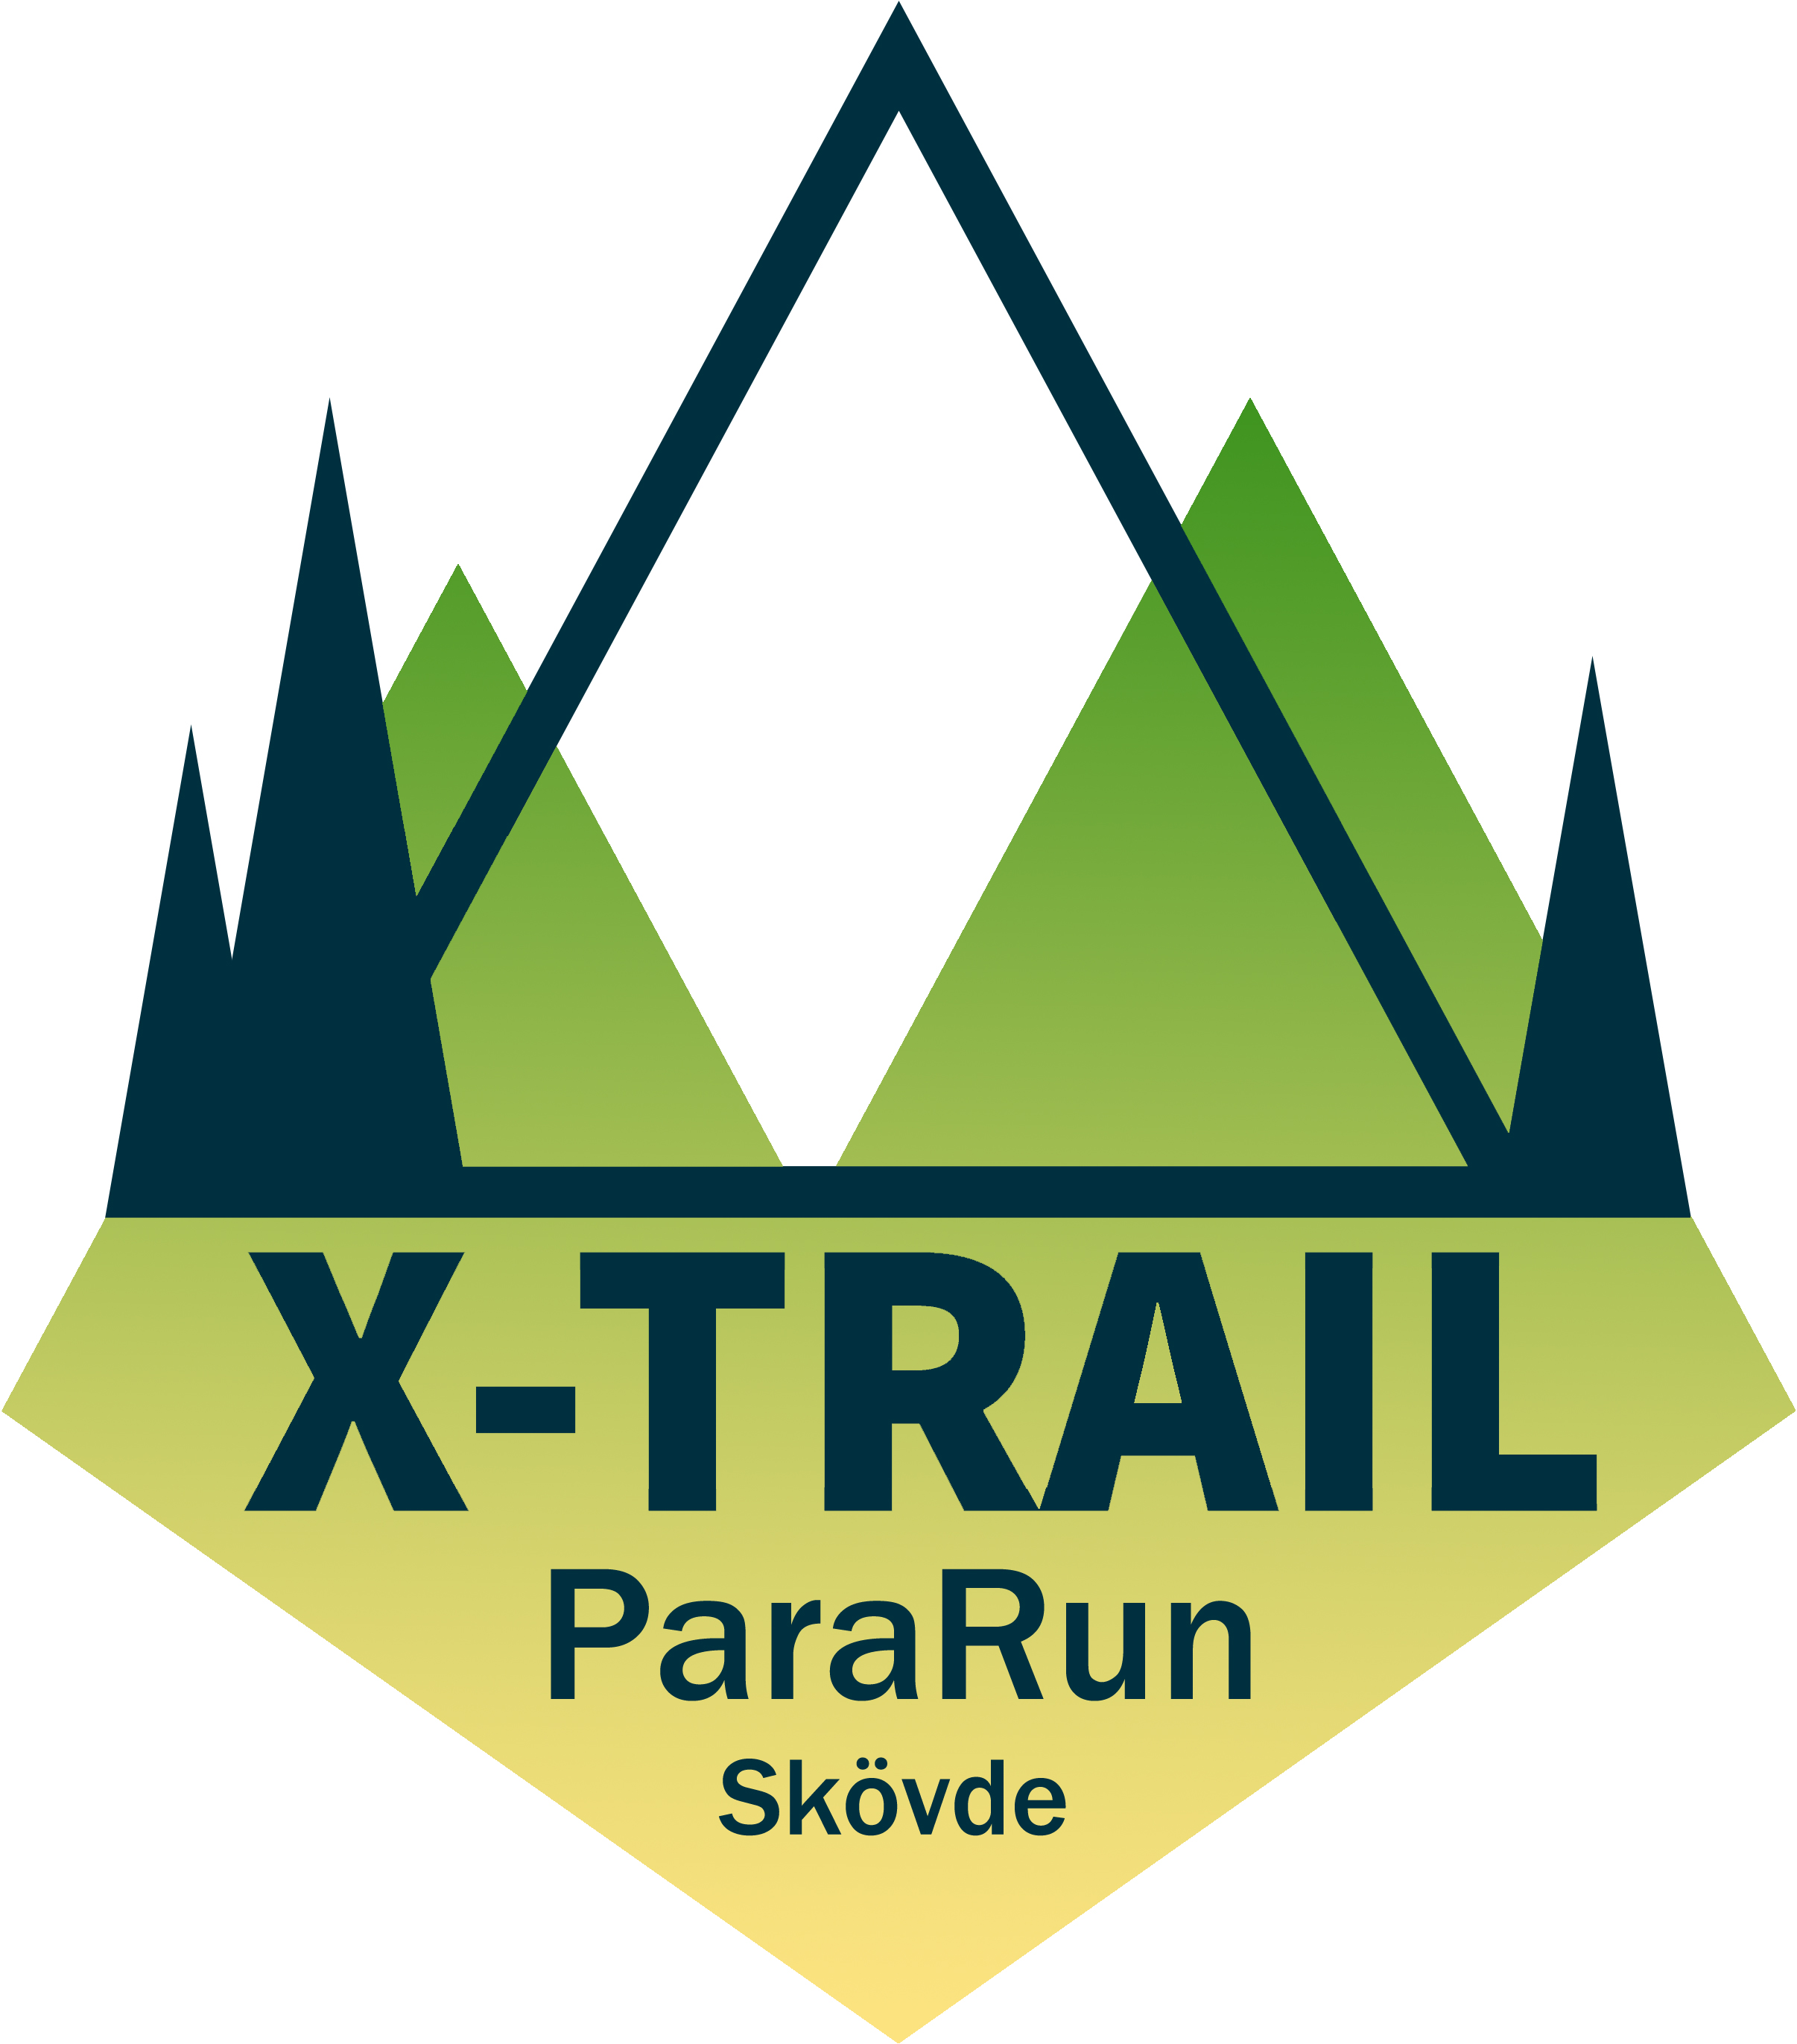 Billingen x-trail Pararuns logga i grön och gul